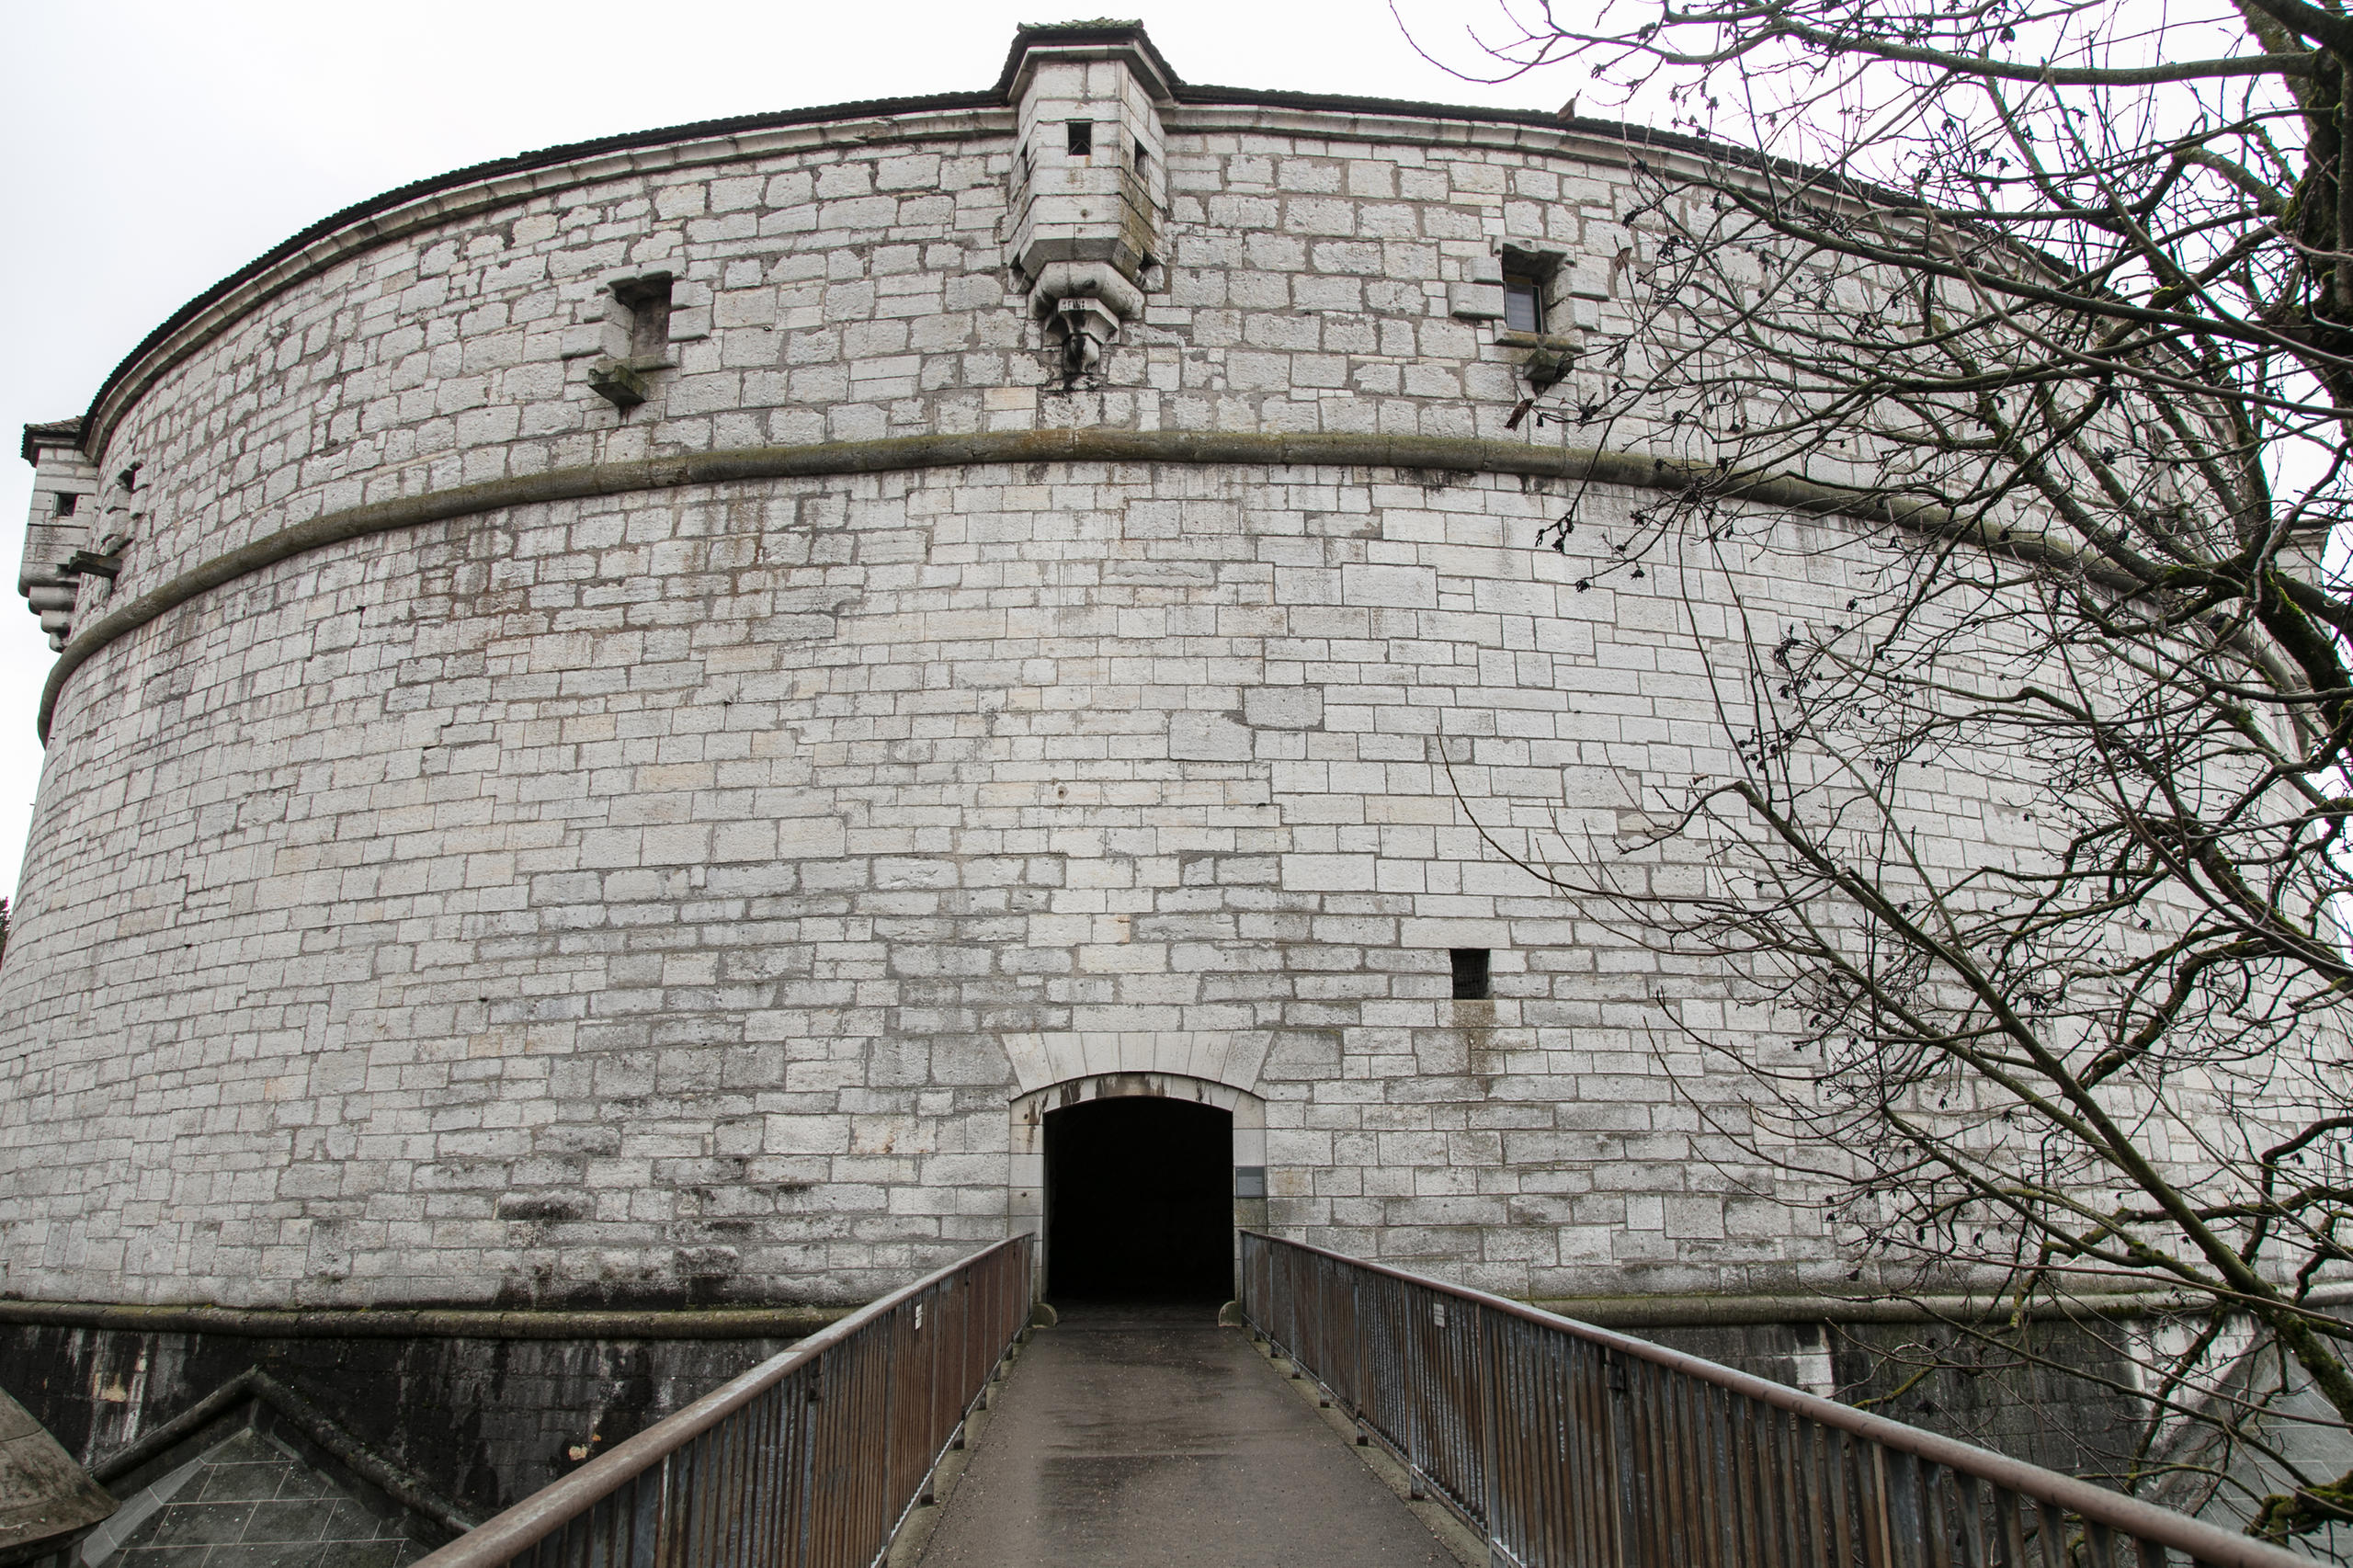 Vue latérale de la fortification